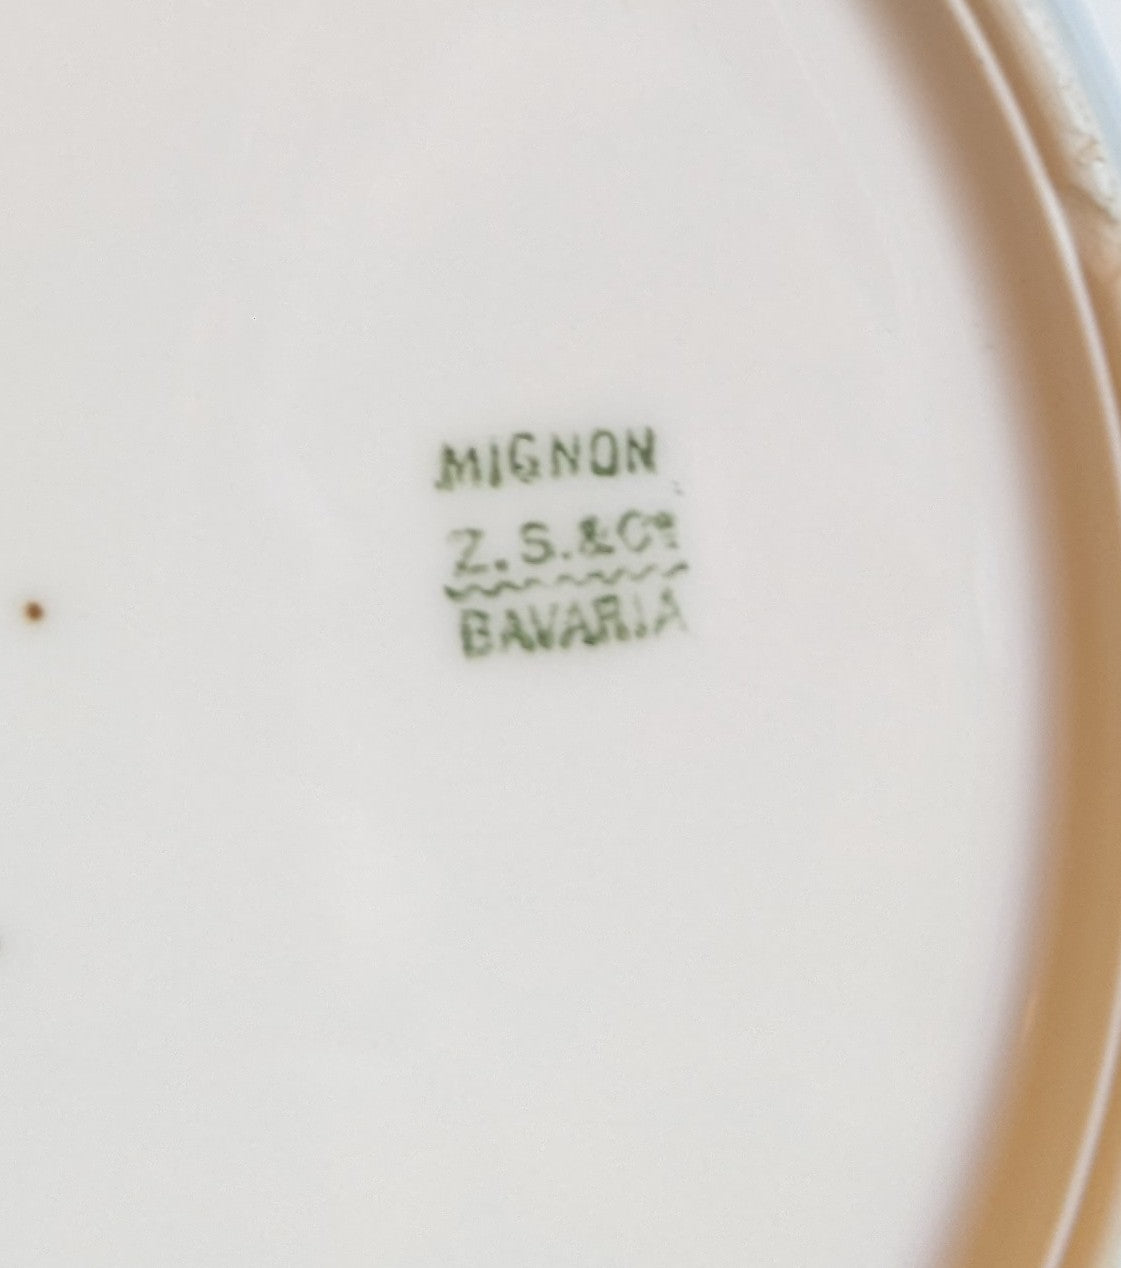 Z. S. & Co. Mignon Bavaria Antique Plate